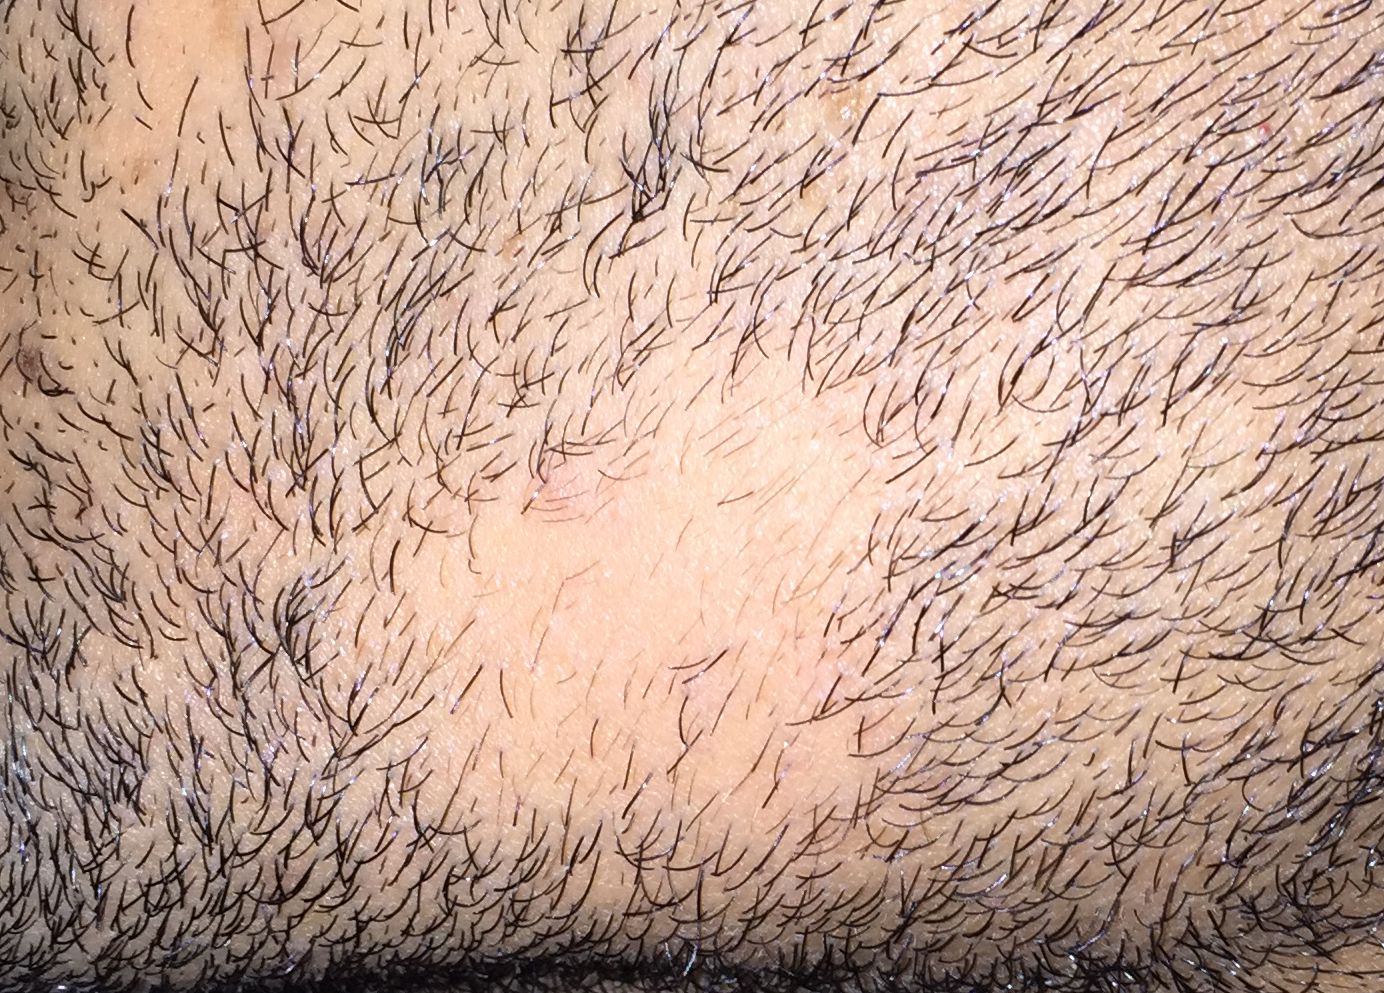 bald-spot-beard-alopecia-areata-barbae-3